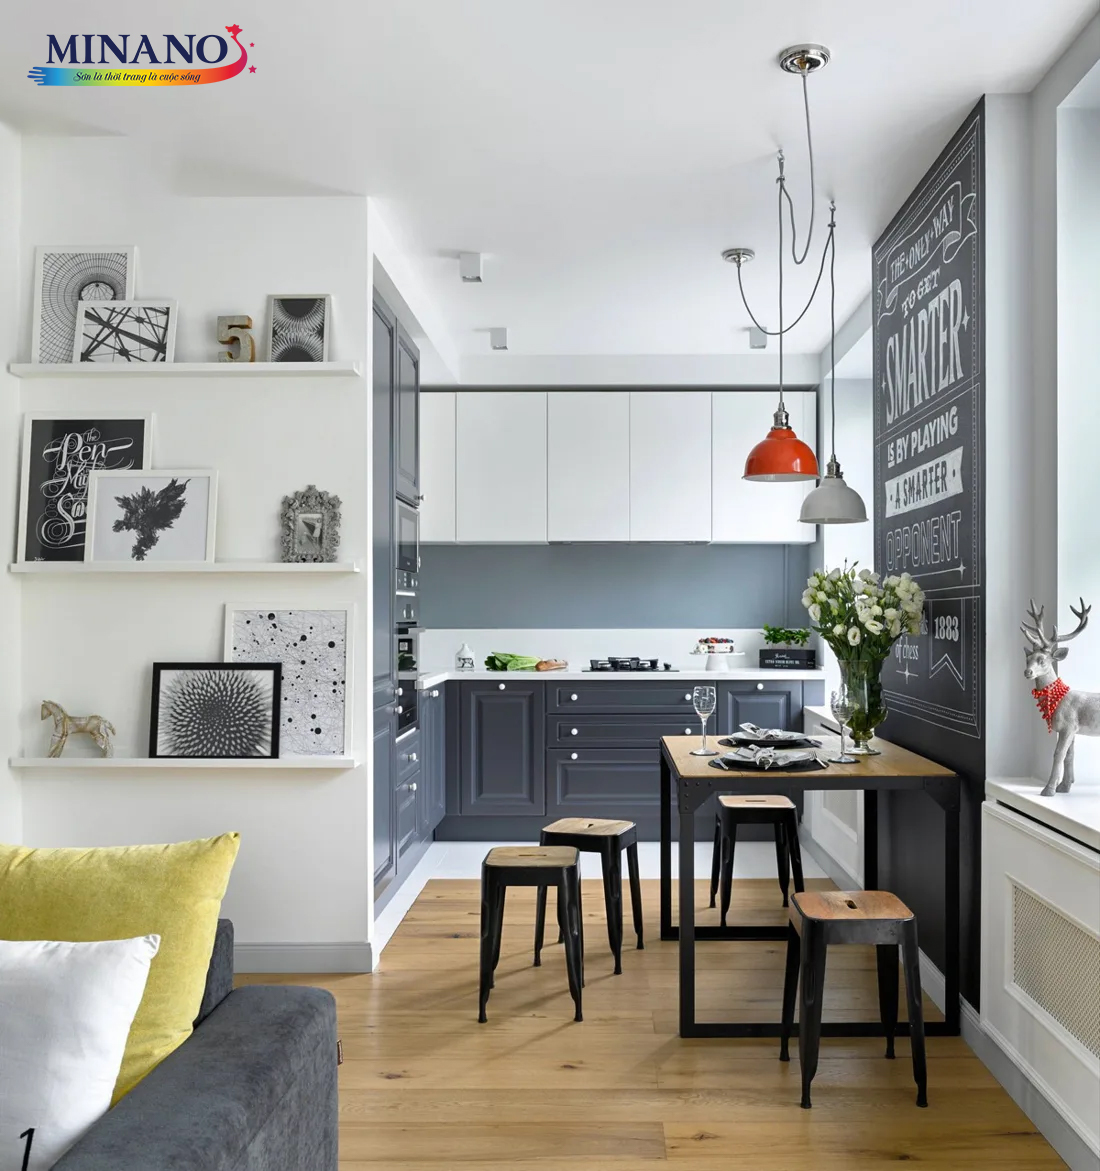 Phòng bếp tinh tế và hiện đại với tone màu trắng xanh kết hợp. Tường và trần được sơn màu trắng ghi, tạo nền cho không gian sạch sẽ và thanh lịch